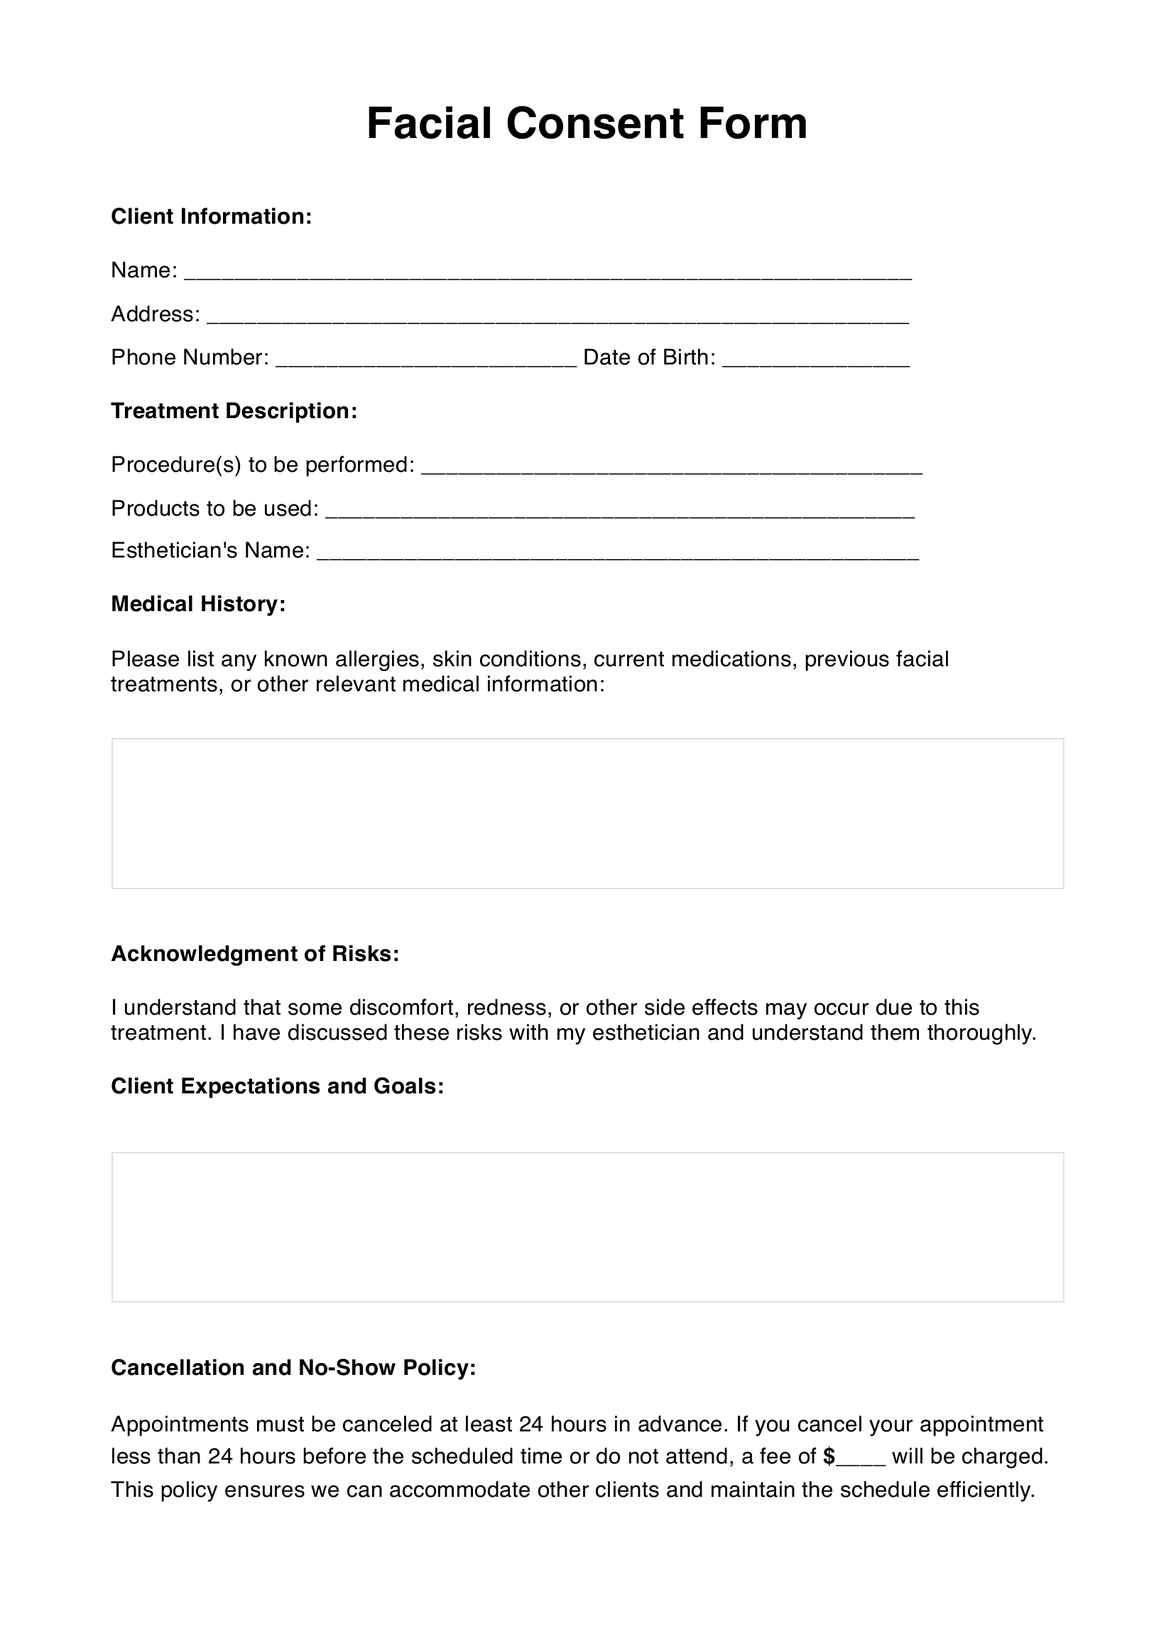 Formulario de Consentimiento para un tratamiento facial PDF Example